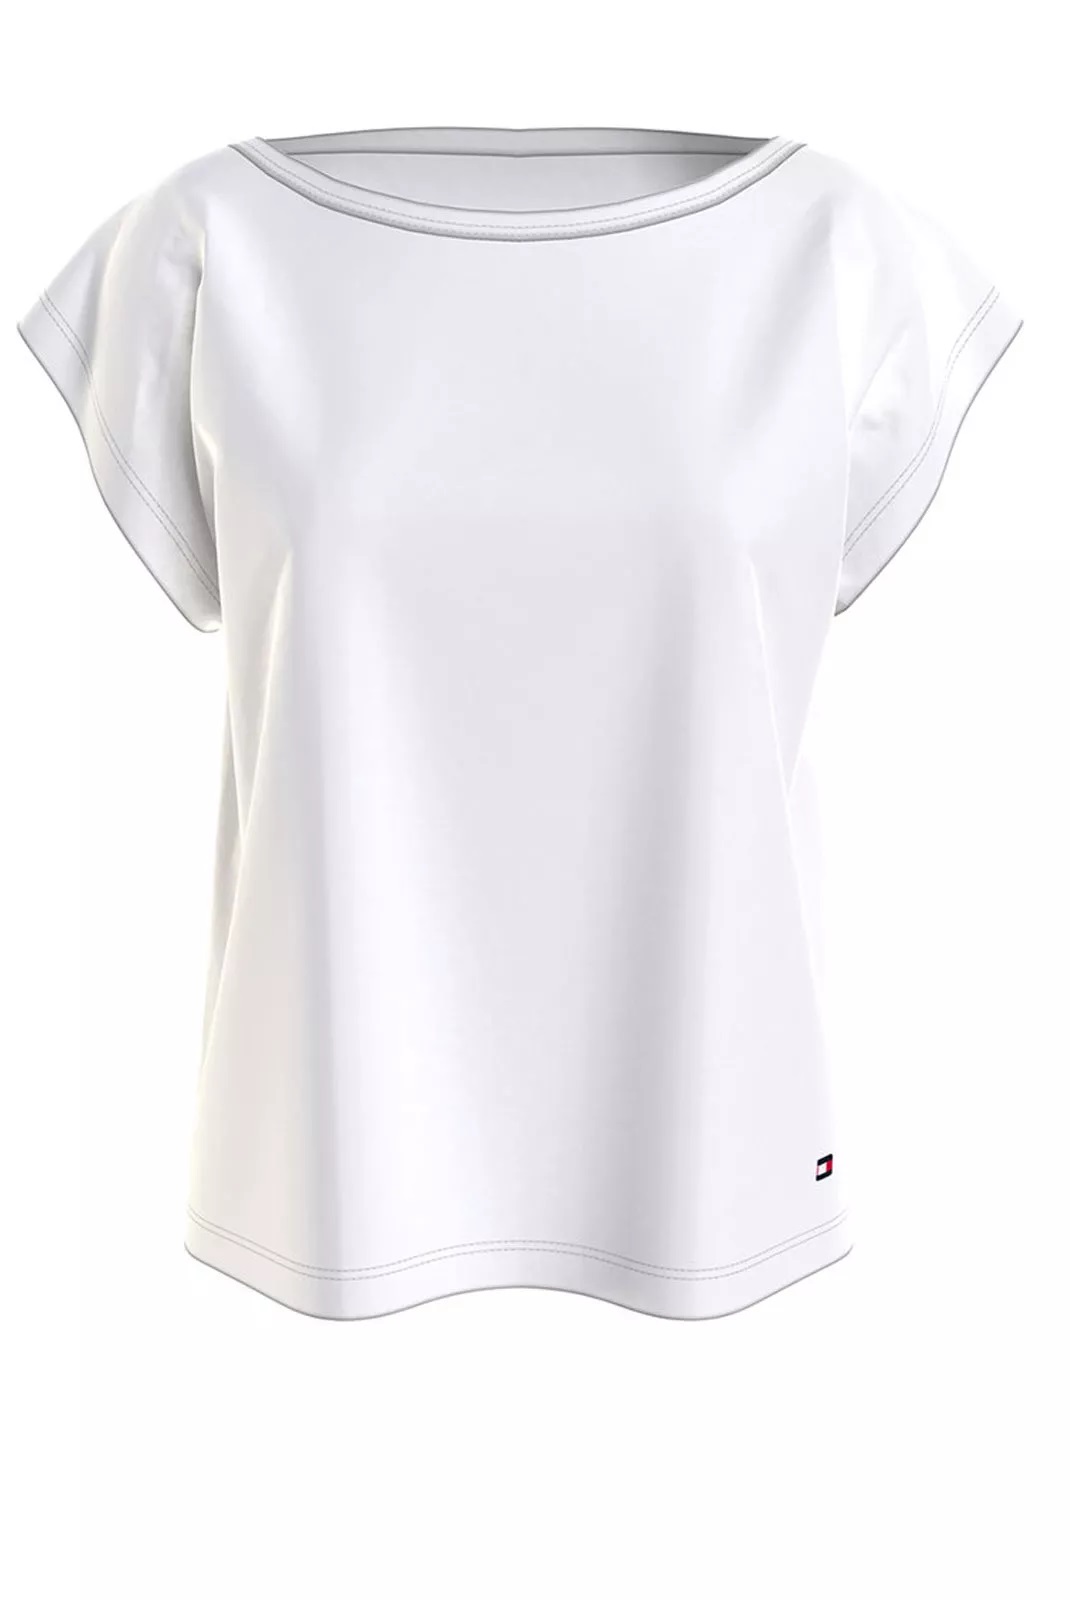 Tommy Hilfiger dámské tričko s logem bílé Velikost: XS